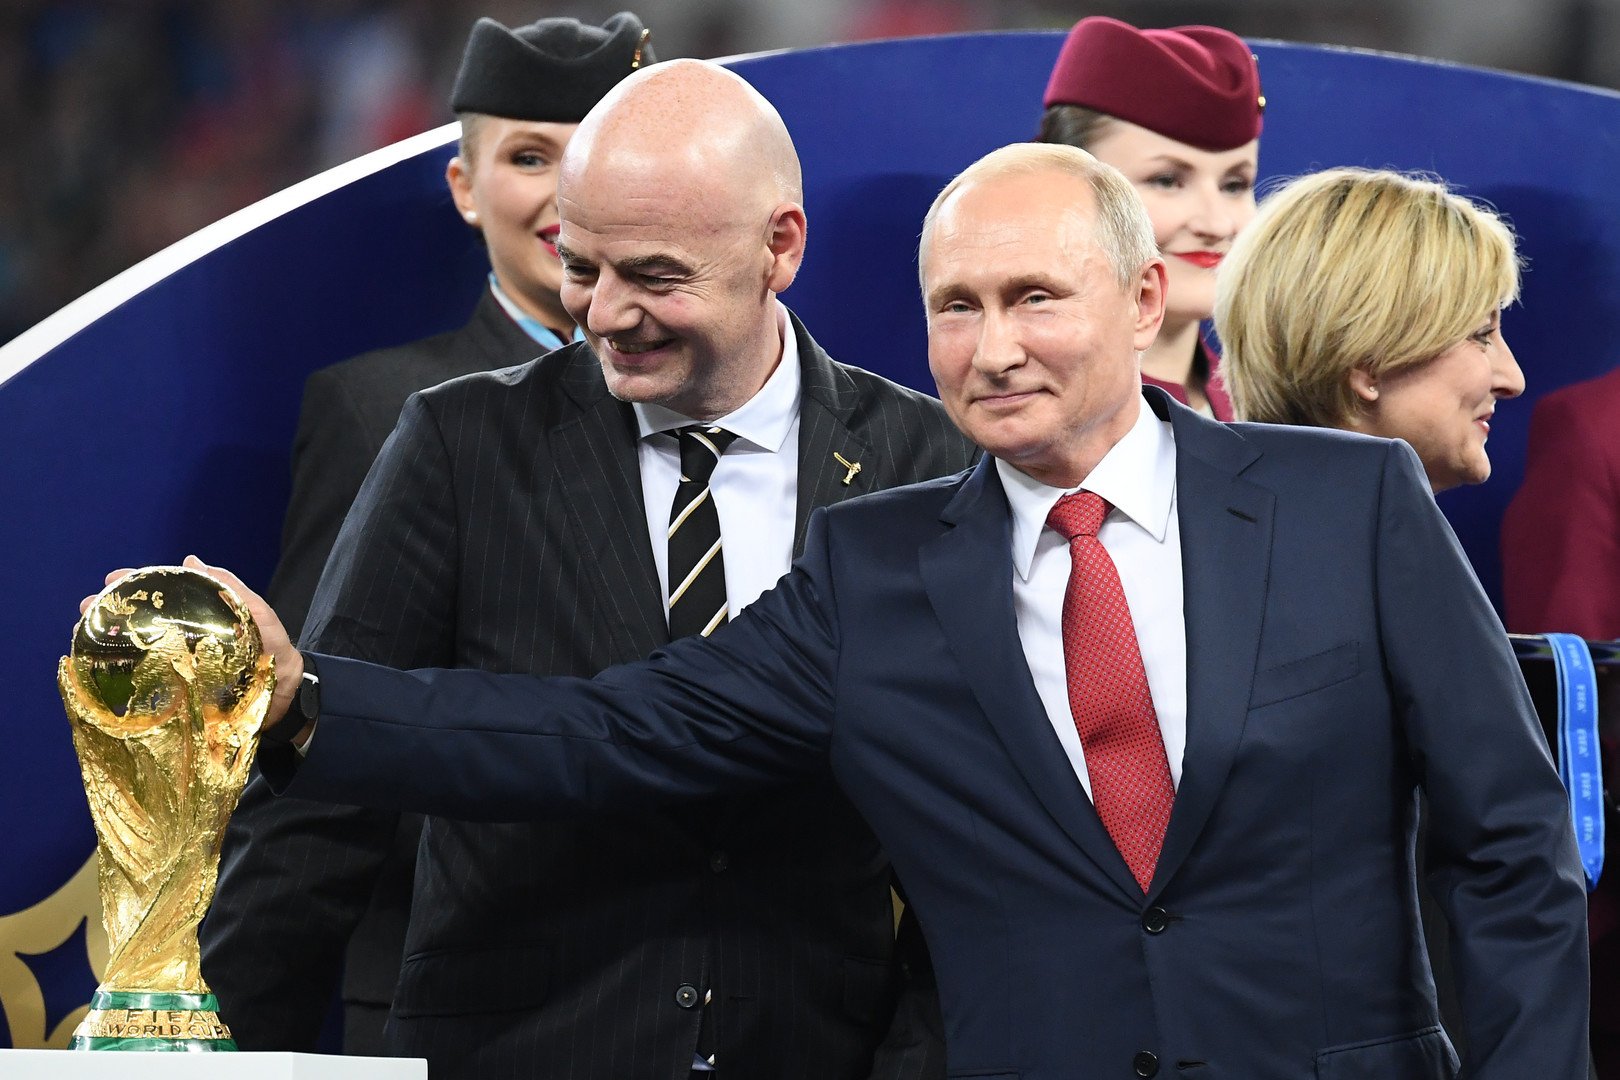 Federação Russa de Futebol estuda deixar Uefa e integrar Confederação  Asiática após sanções na Europa - Super Rádio Tupi